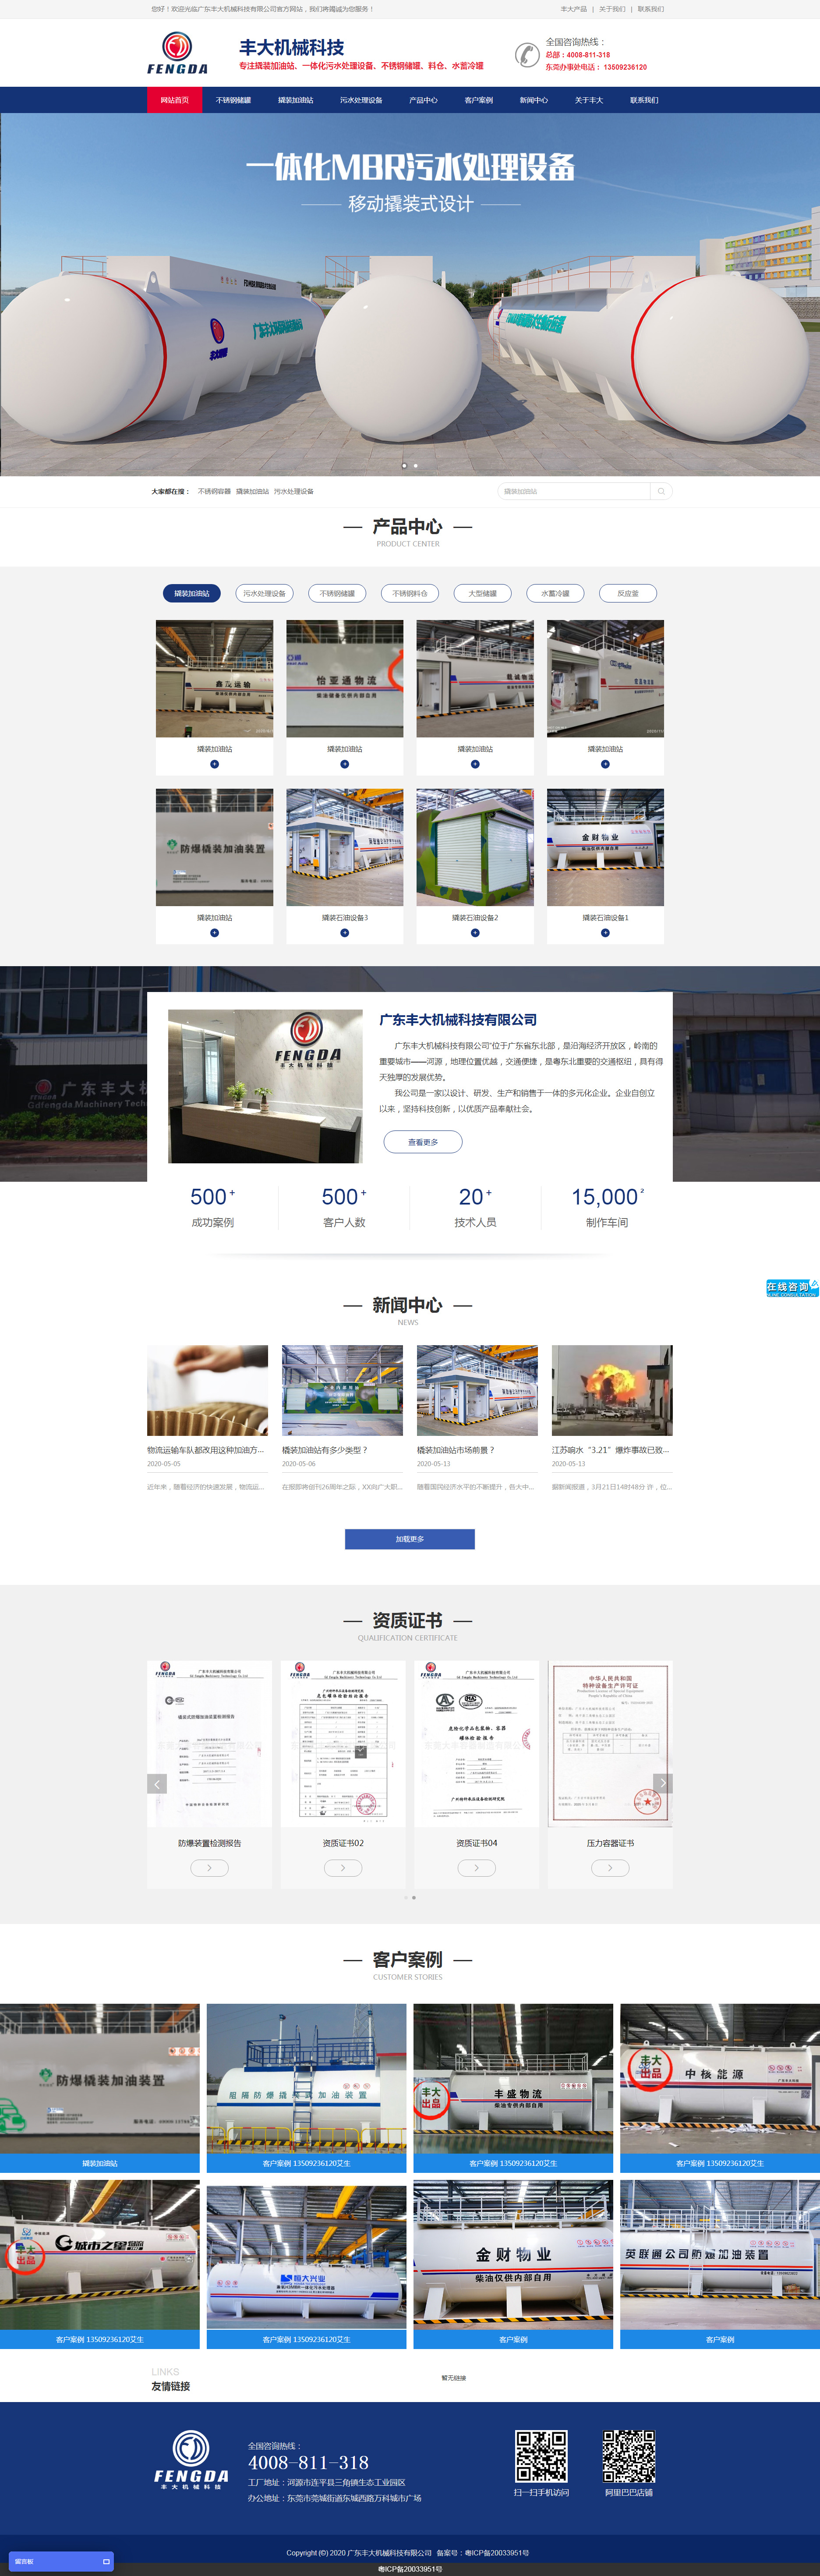 广东丰大机械科技网站制作首页设计效果图